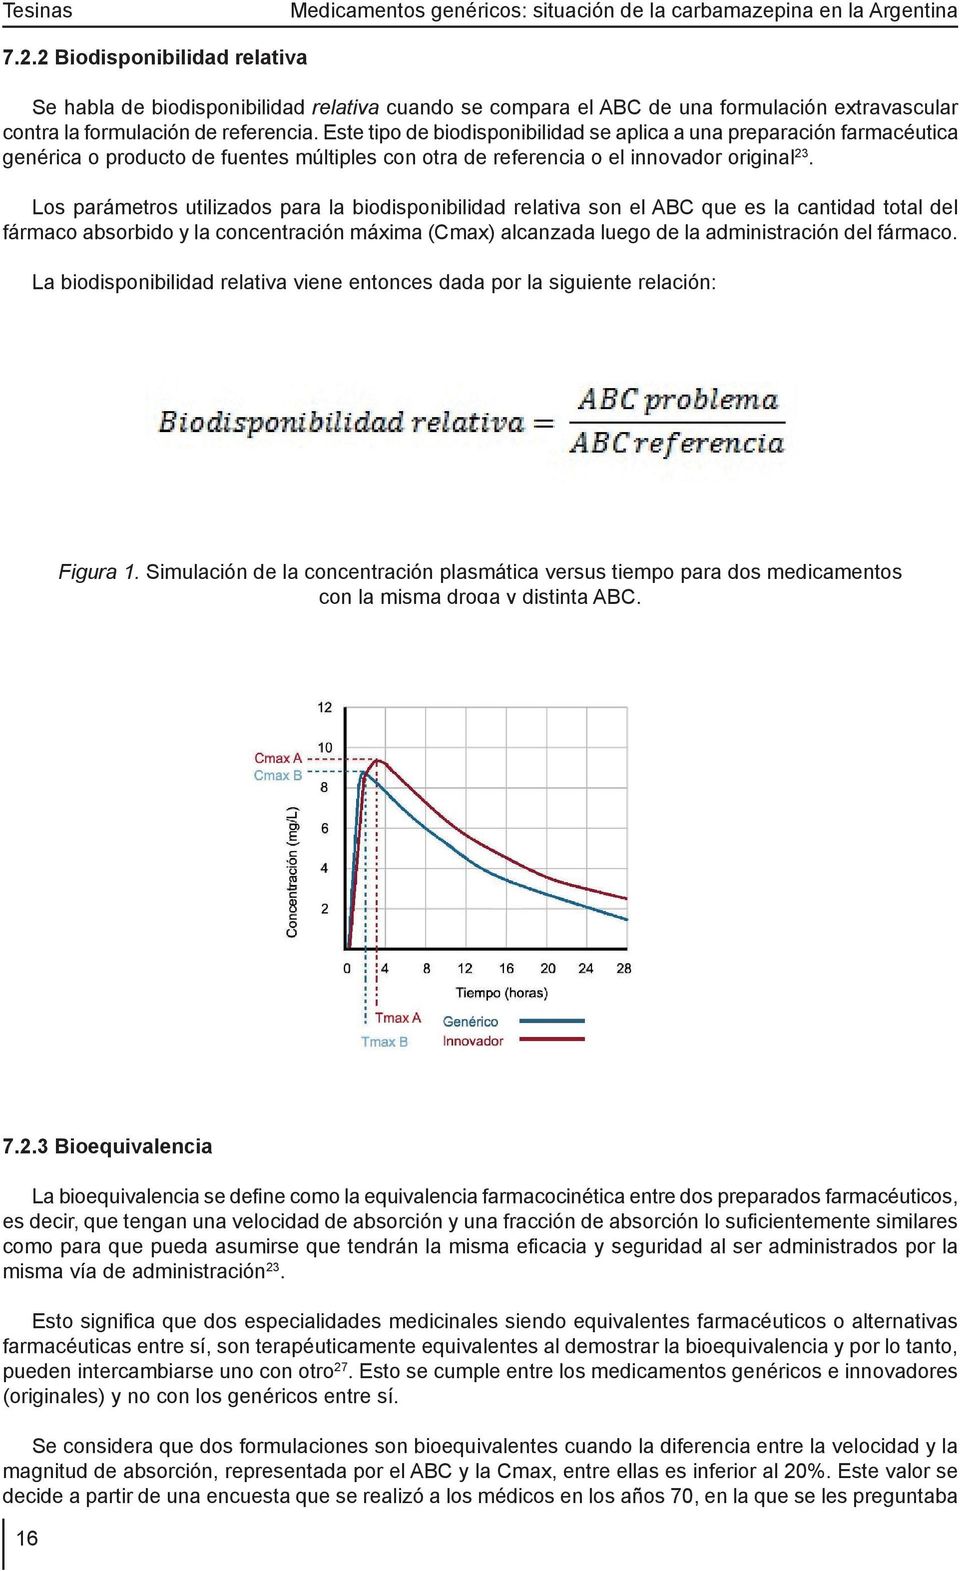 Los parámetros utilizados para la biodisponibilidad relativa son el ABC que es la cantidad total del fármaco absorbido y la concentración máxima (Cmax) alcanzada luego de la administración del